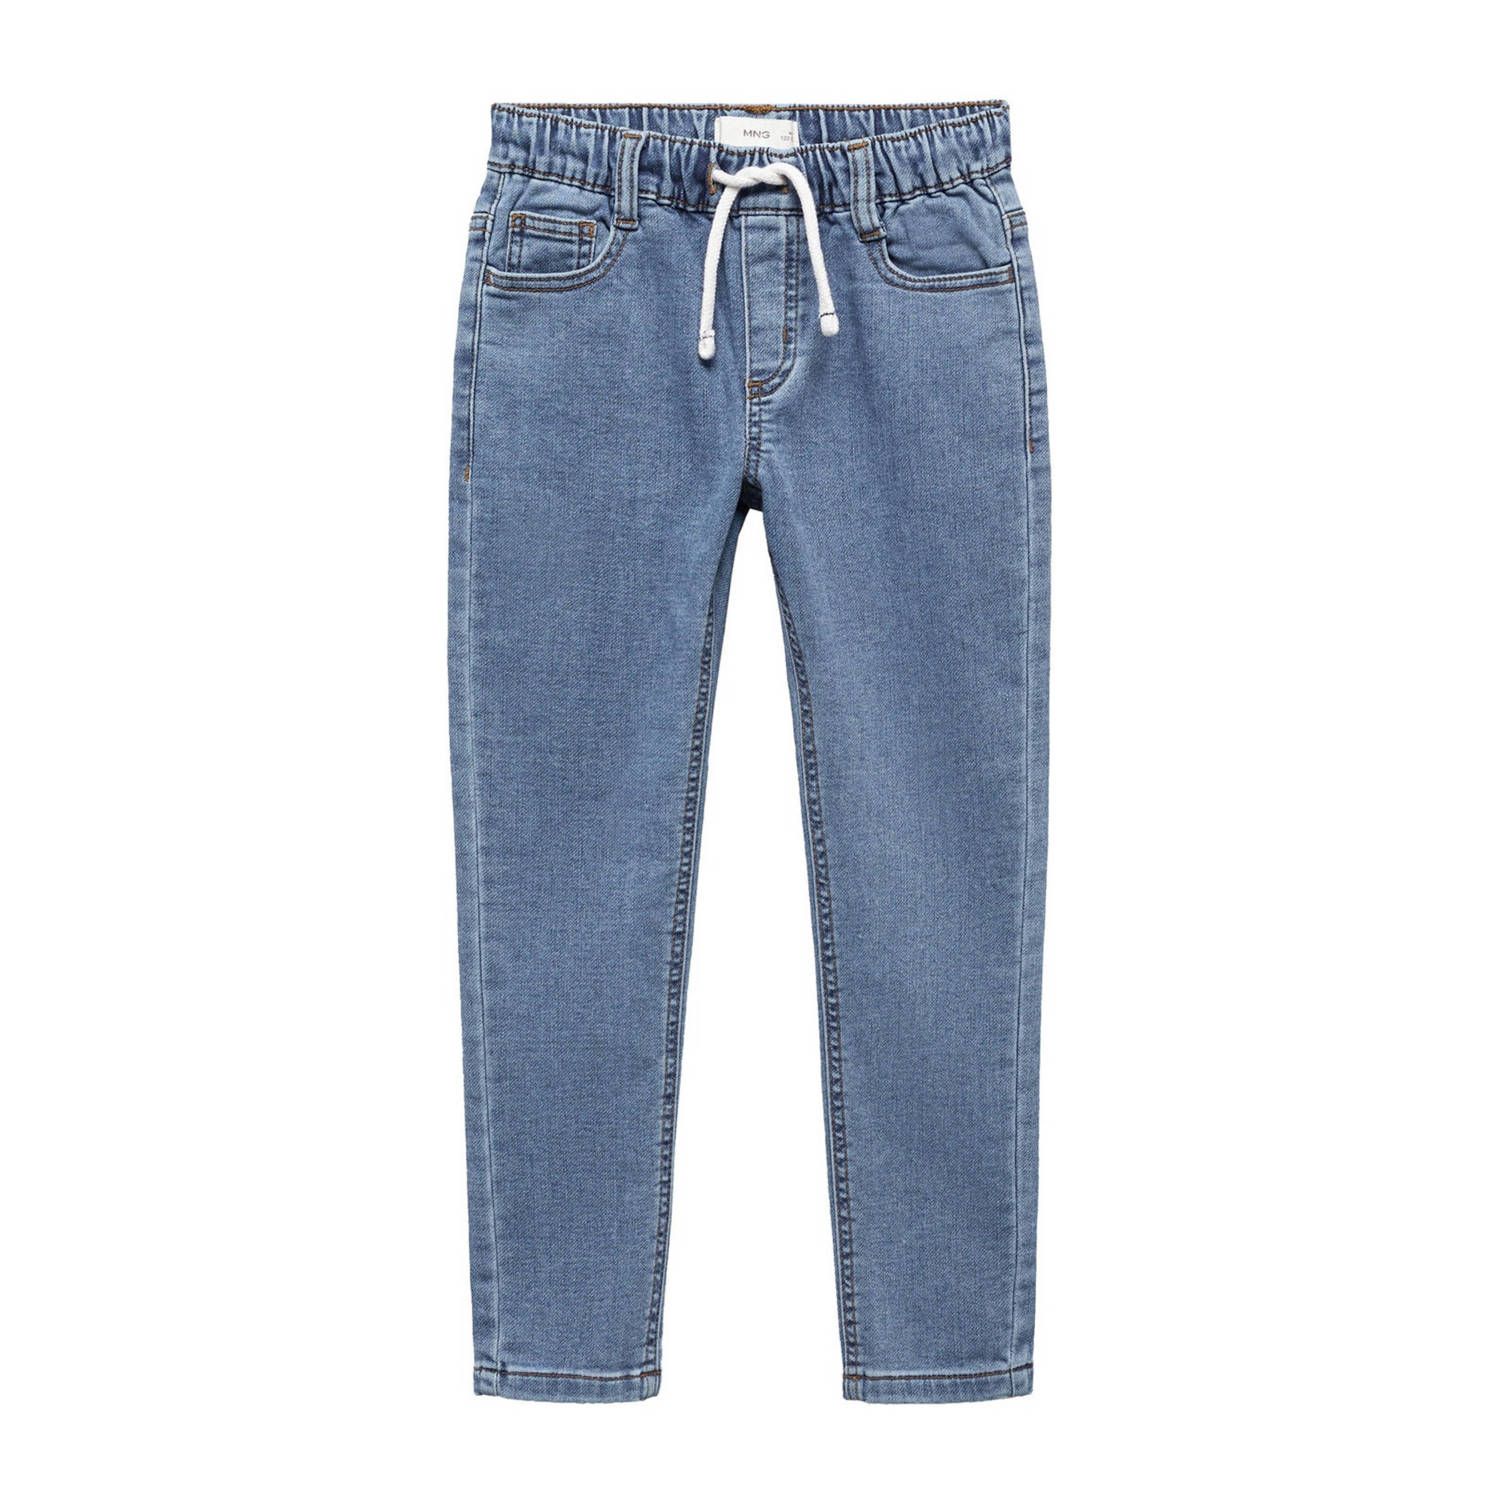 Mango Kids relaxed jeans changeant blauw Broek Jongens Stretchdenim Effen 122